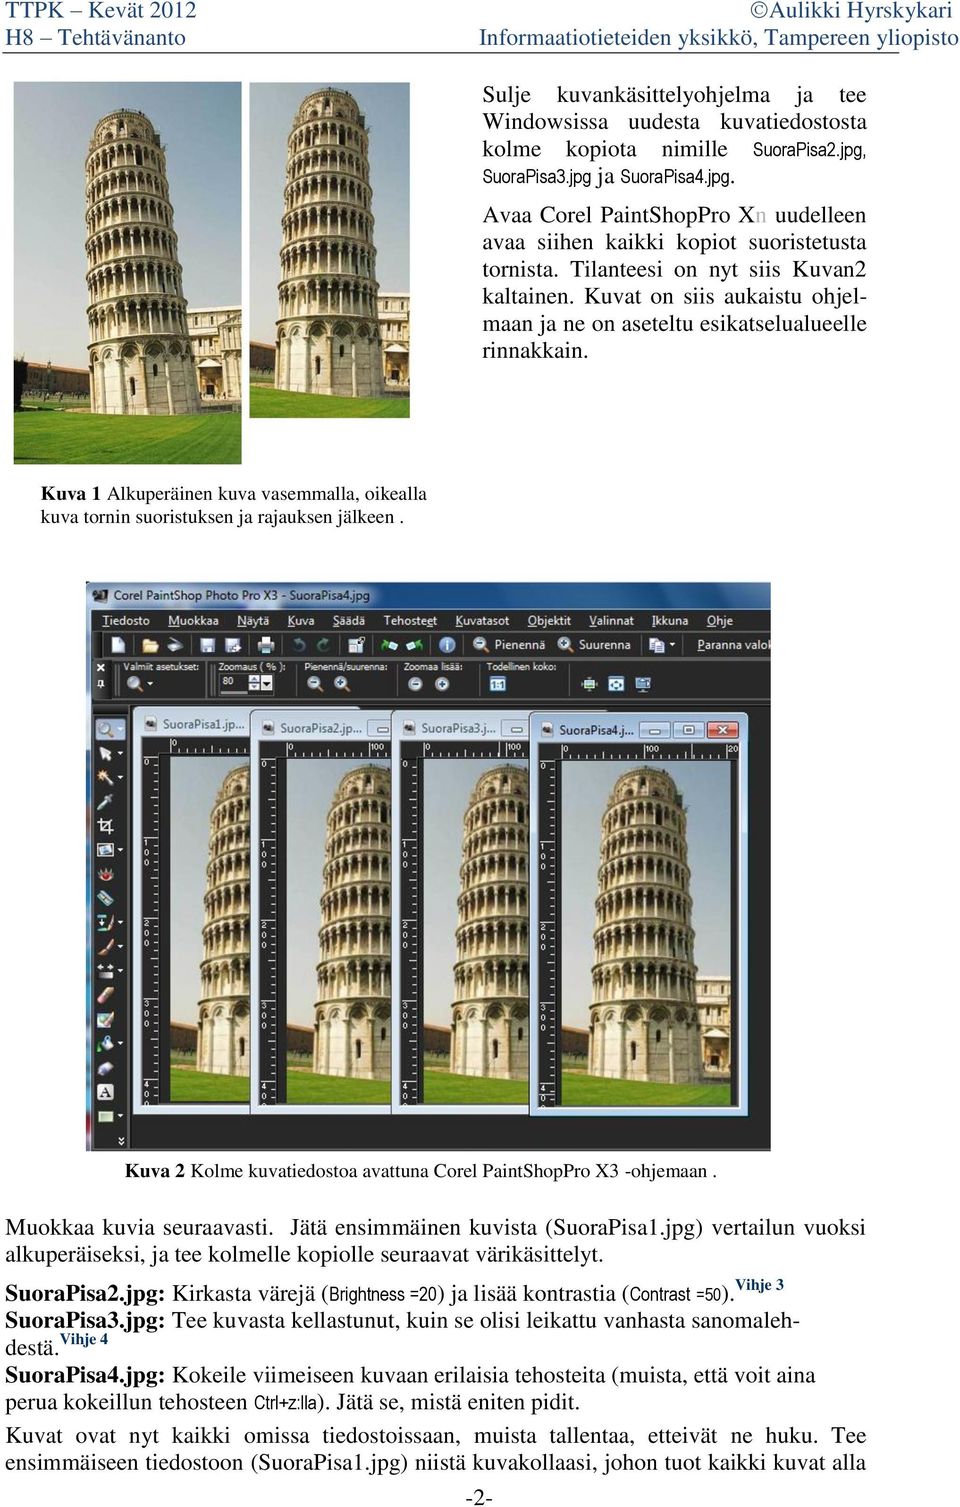 Kuva 1 Alkuperäinen kuva vasemmalla, oikealla kuva tornin suoristuksen ja rajauksen jälkeen. Kuva 2 Kolme kuvatiedostoa avattuna Corel PaintShopPro X3 -ohjemaan. Muokkaa kuvia seuraavasti.